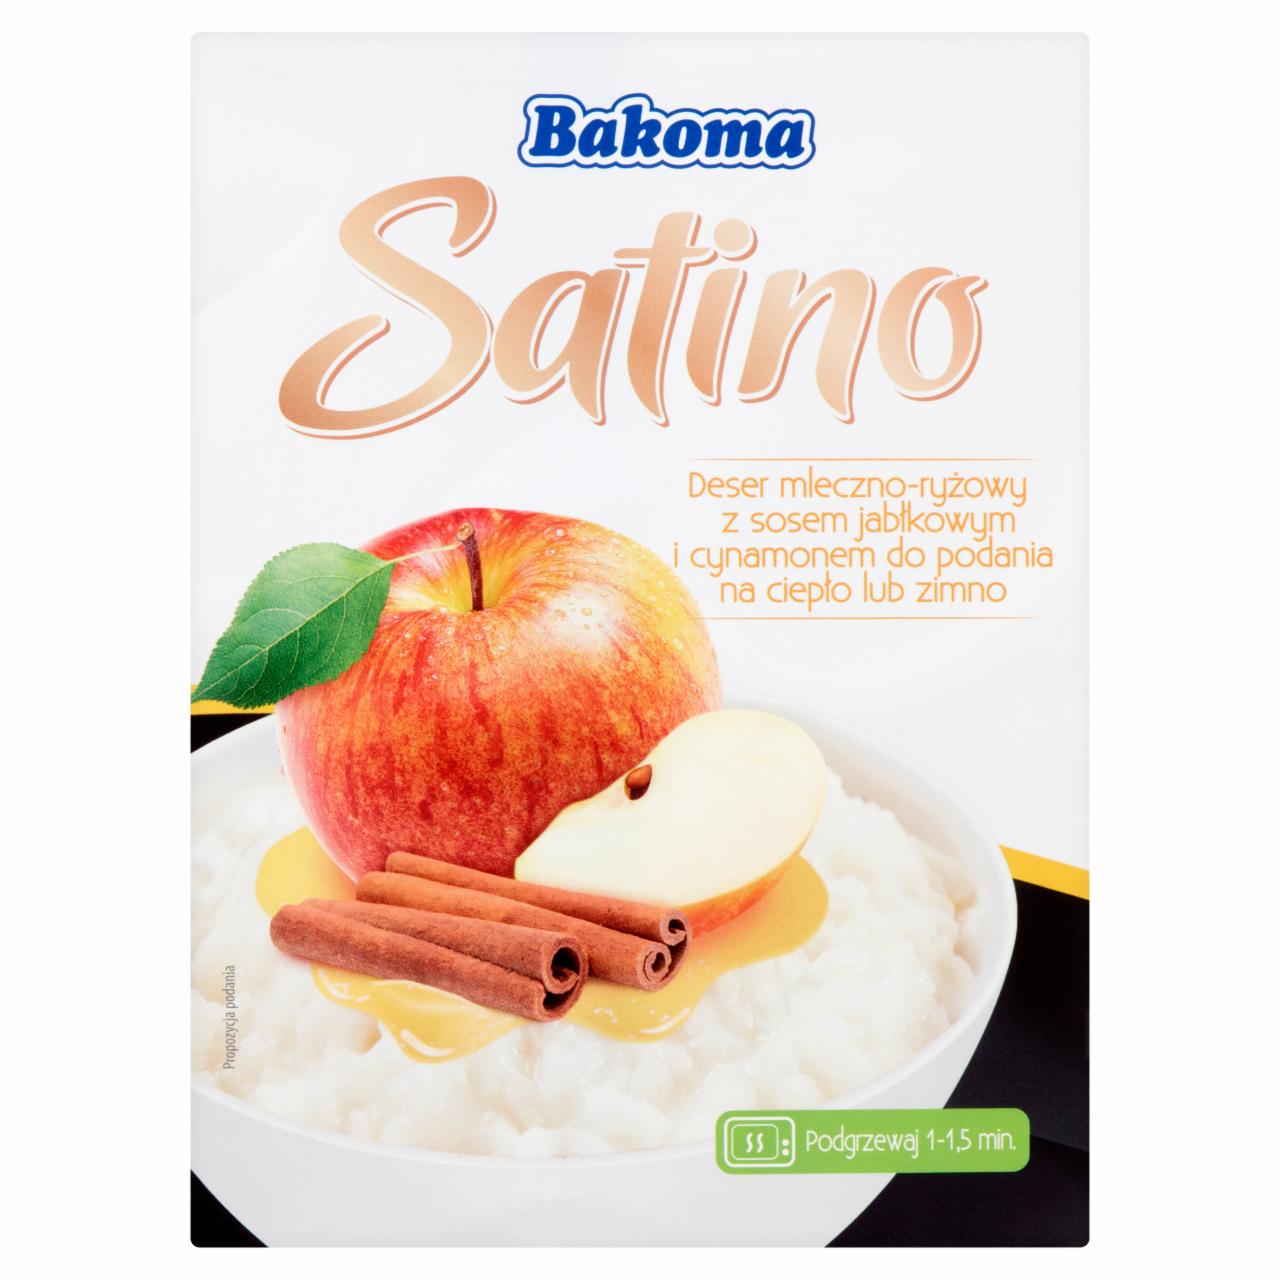 Zdjęcia - Bakoma Satino Deser mleczno-ryżowy z sosem jabłkowym i cynamonem 300 g